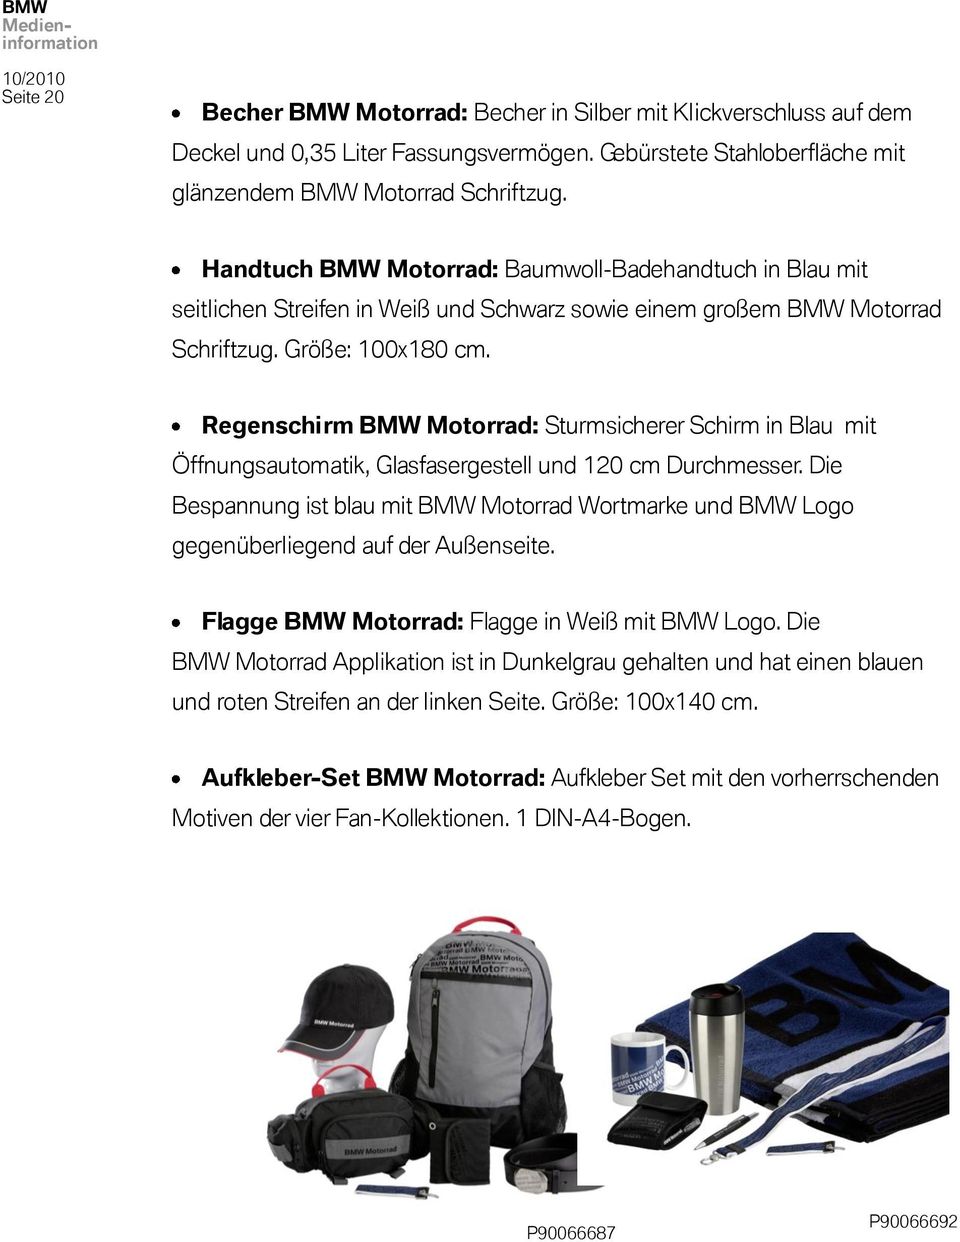 Regenschirm BMW Motorrad: Sturmsicherer Schirm in Blau mit Öffnungsautomatik, Glasfasergestell und 120 cm Durchmesser.